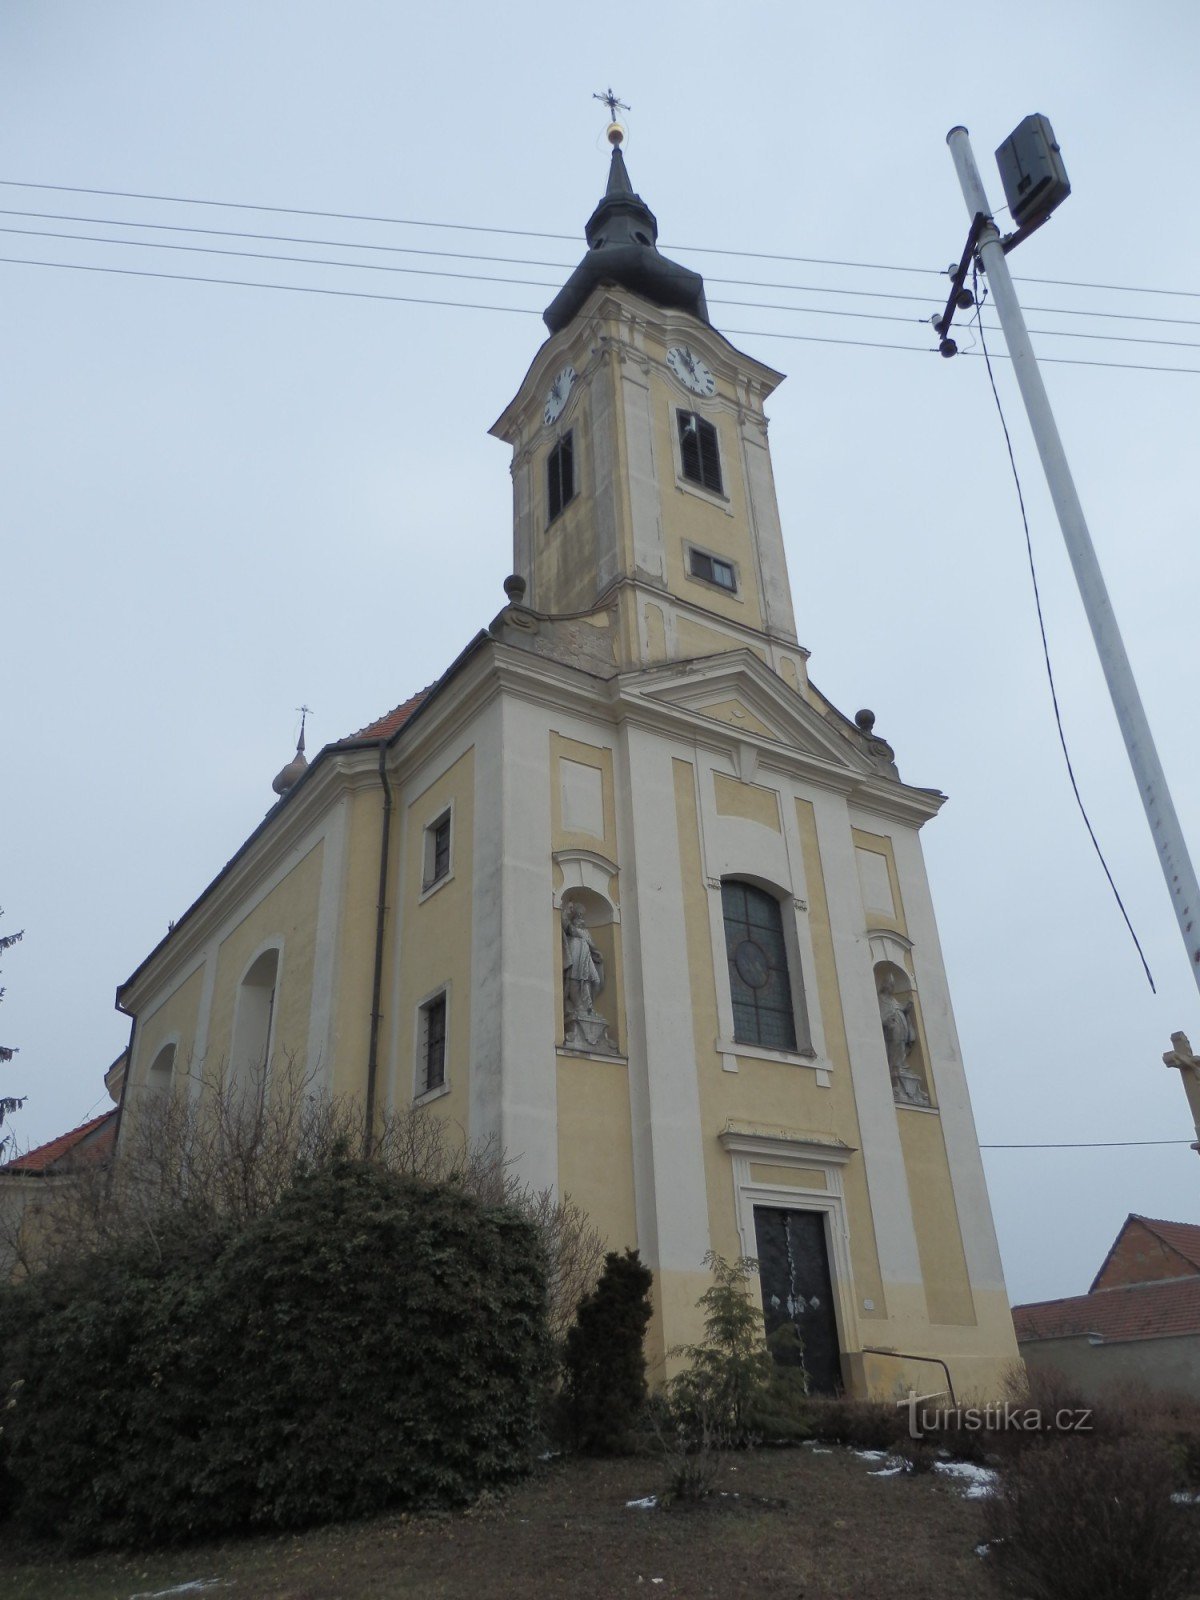 Церковь св. Якуб Ветши и Матуш в Новых Звездлицах